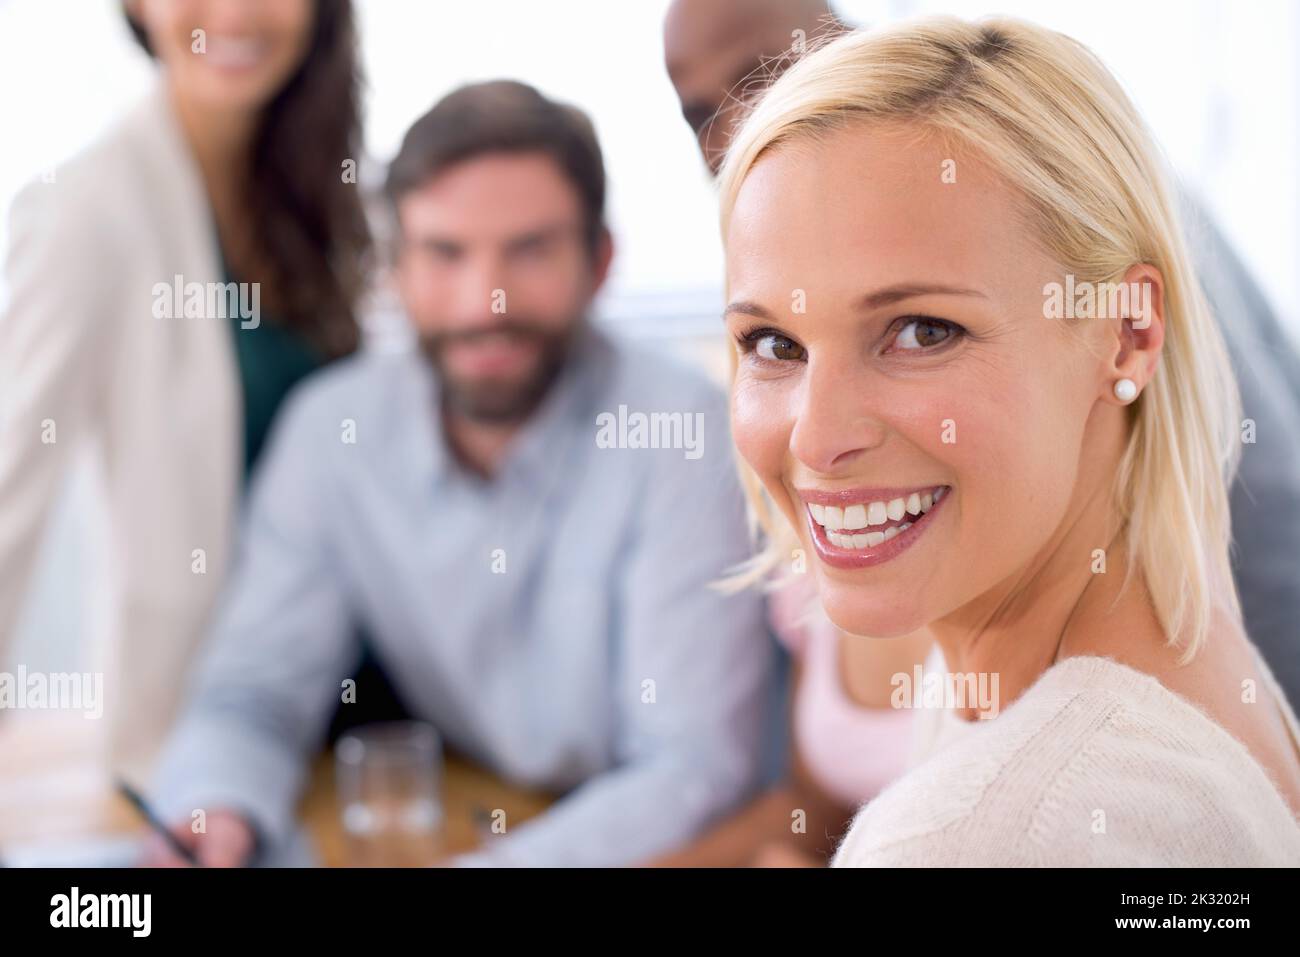 Die neueste Führungskraft des Unternehmens. Porträt einer lächelnden, schönen Geschäftsfrau bei einem Teamtreffen mit ihrem Team im Hintergrund. Stockfoto